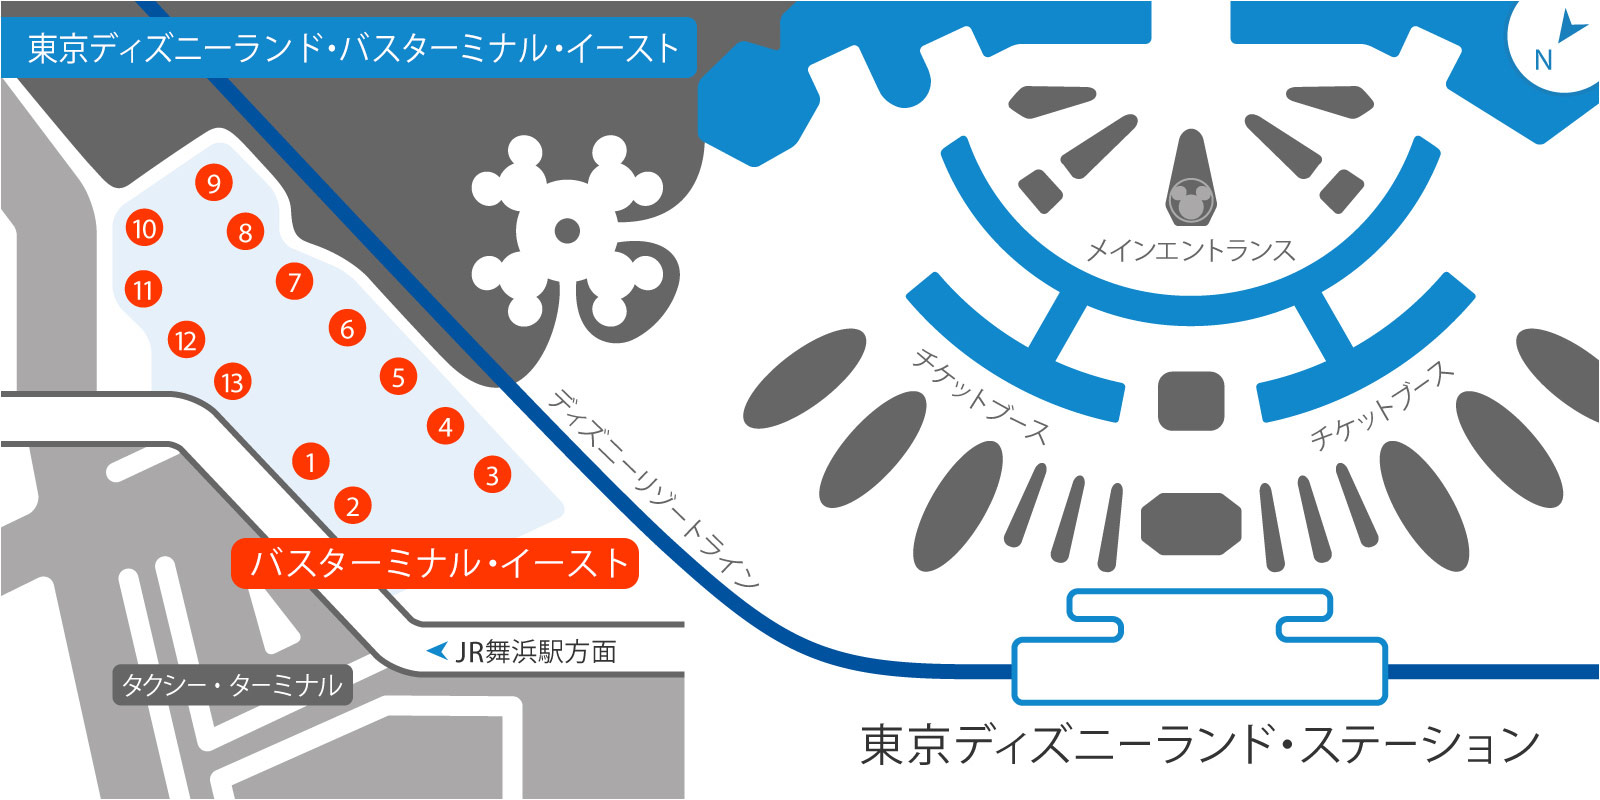 東京ディズニーランド・バス・ターミナルの地図2